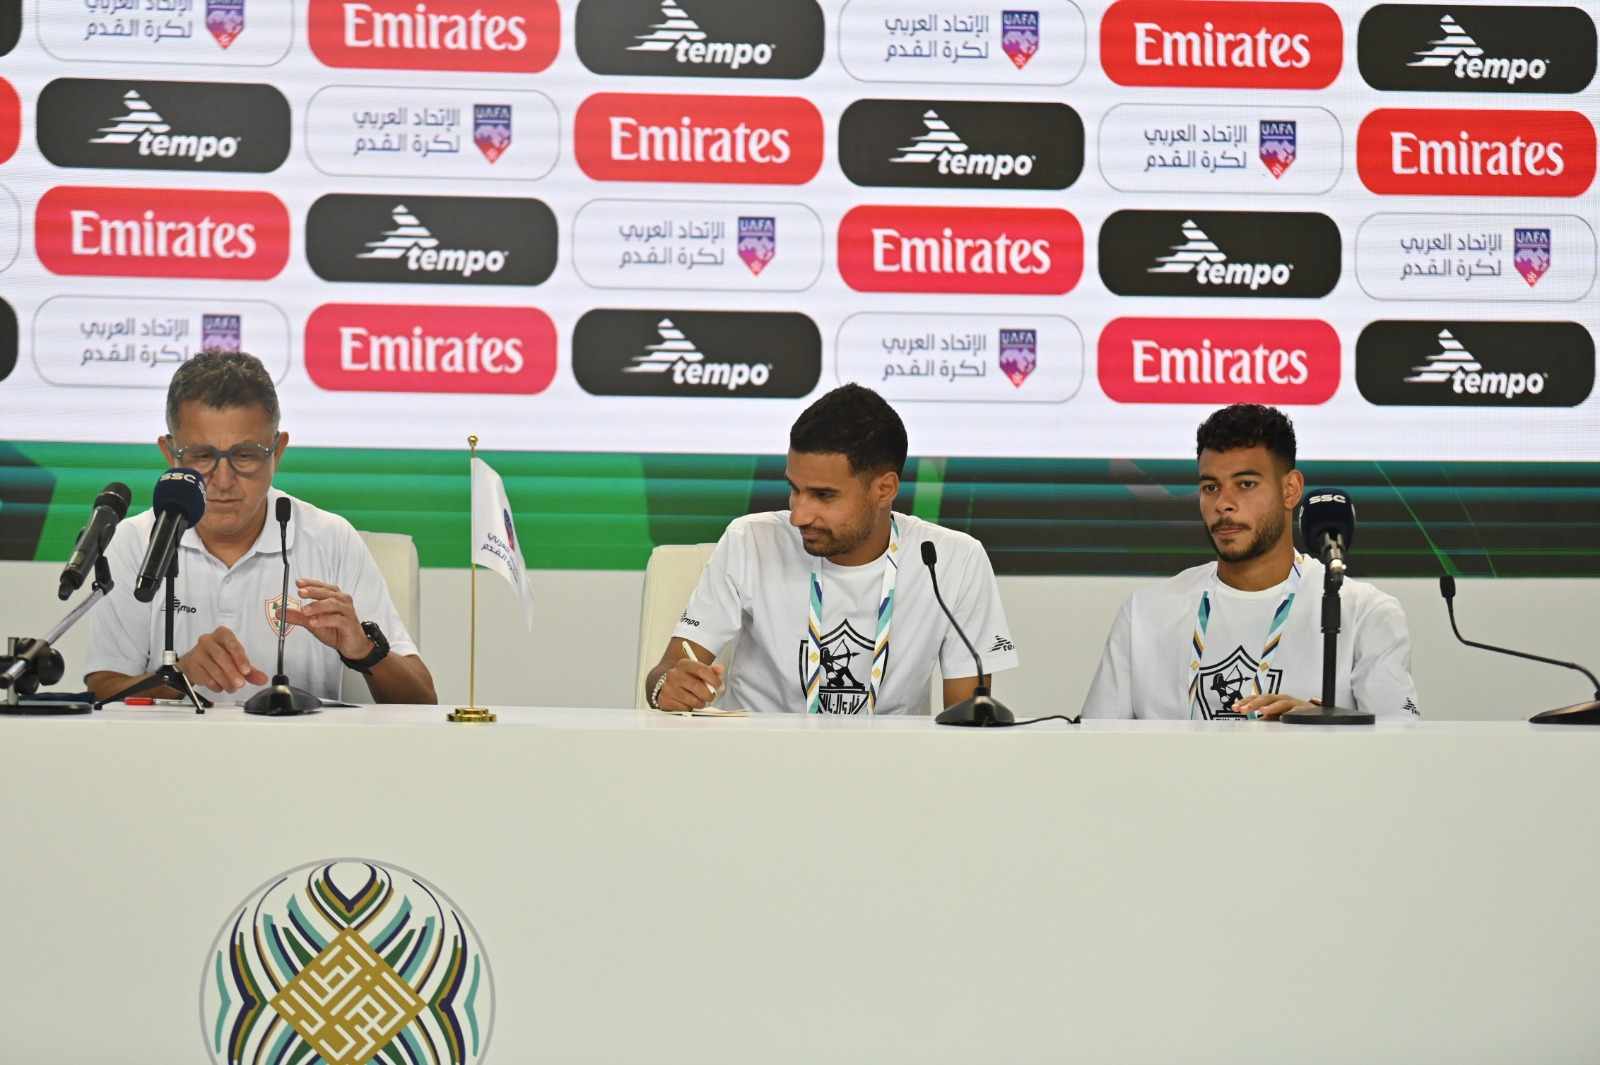 دونجا : "رغم الظروف الصعبة" الزمالك سينافس على البطولة العربية،، و نعد الجماهير بأن نكون عند حُسن ظنهم